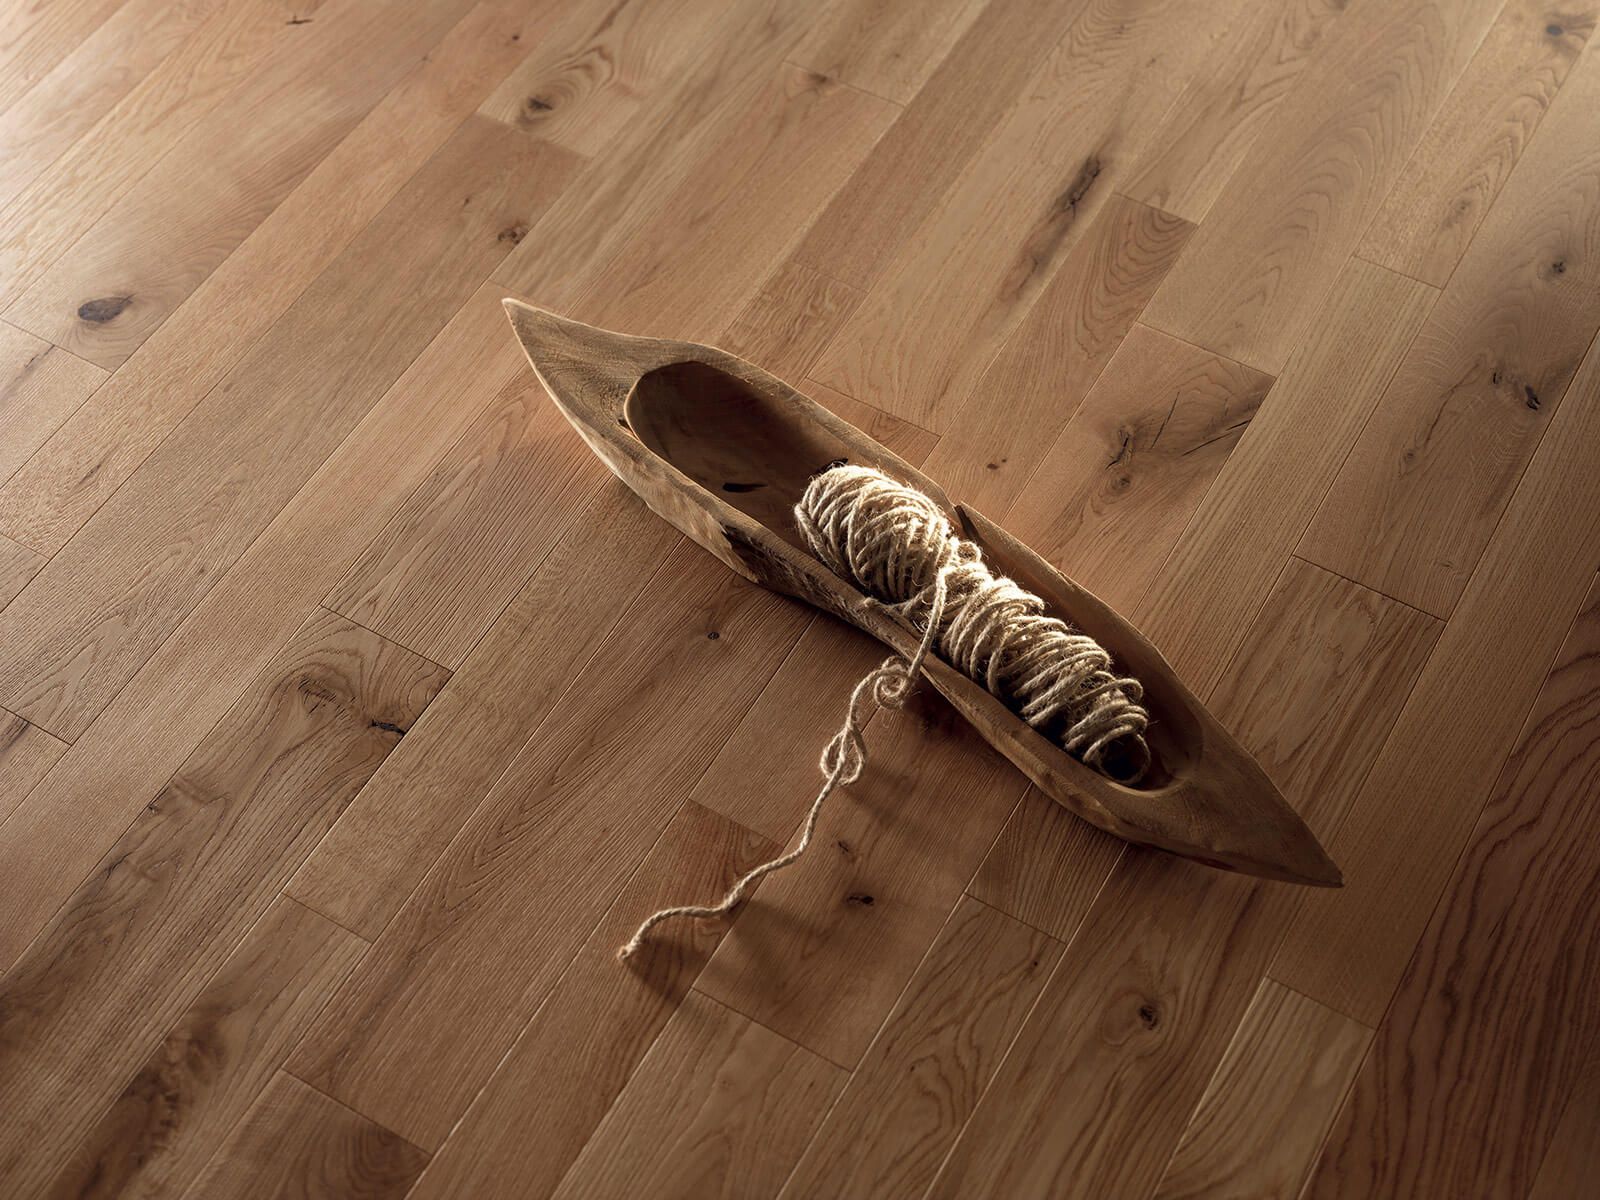 parquet pavimento in legno aliparquet